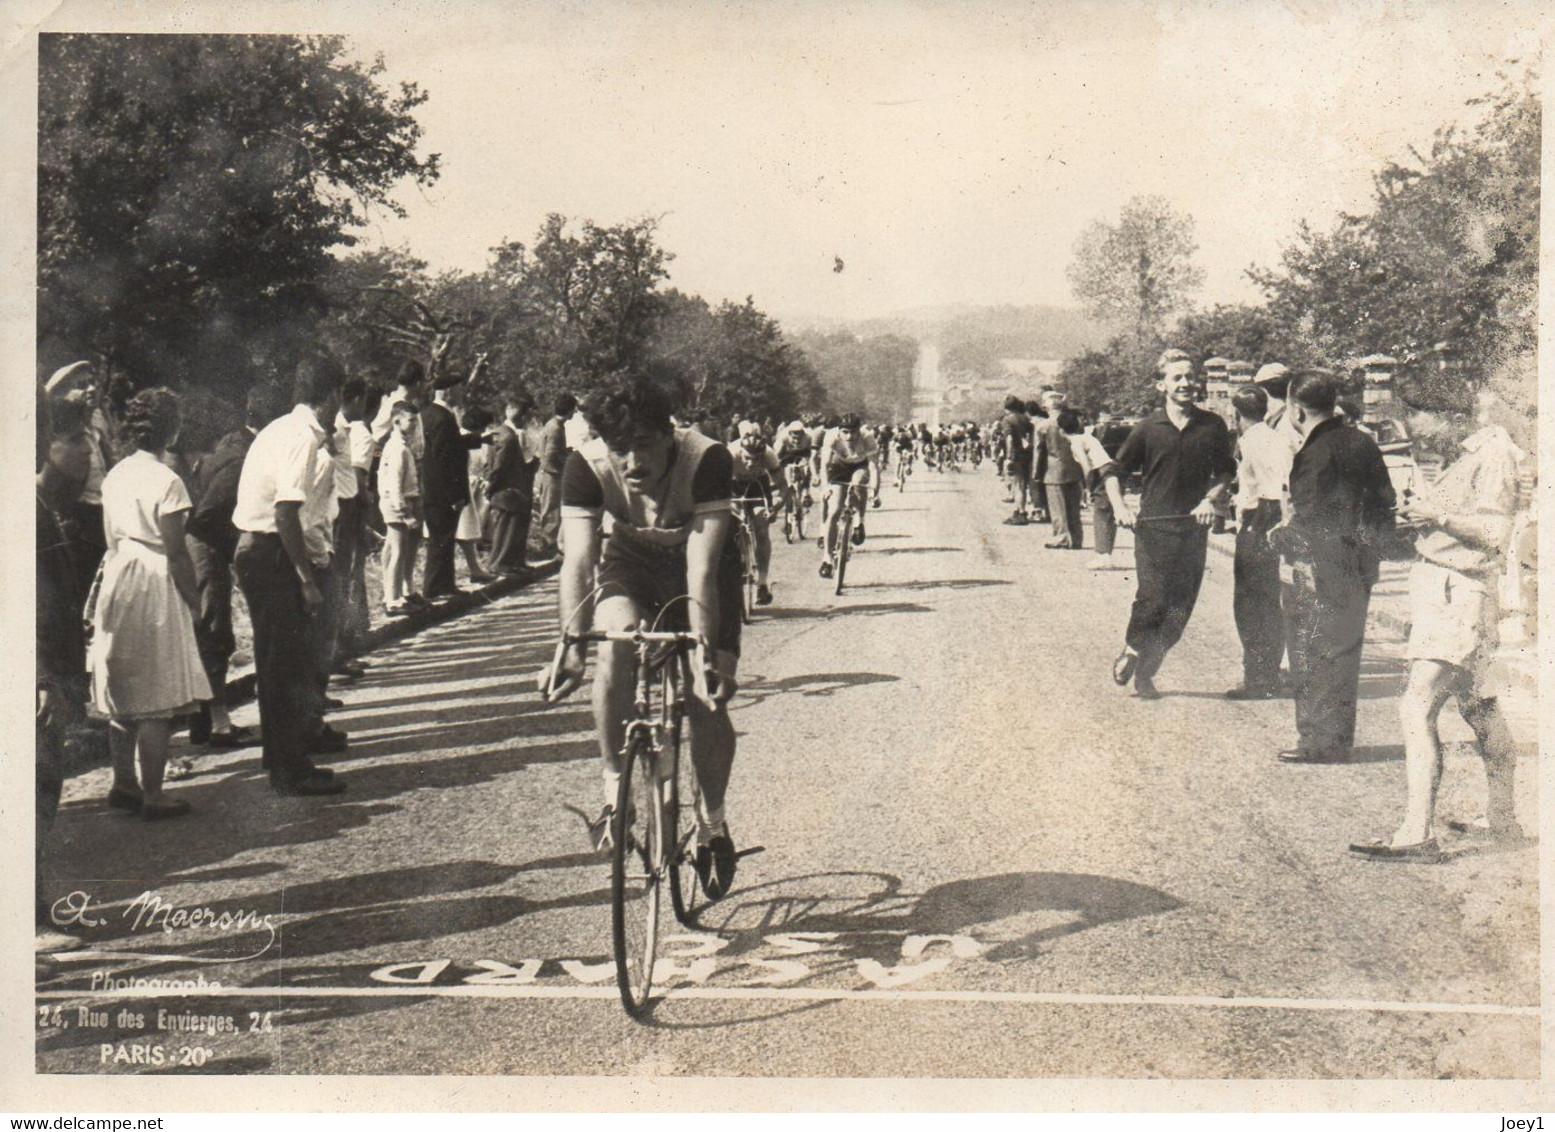 Photo 13/18 Course De Vélos Années 50 ,Macron Photo CV 19ème Gobillot - Ciclismo